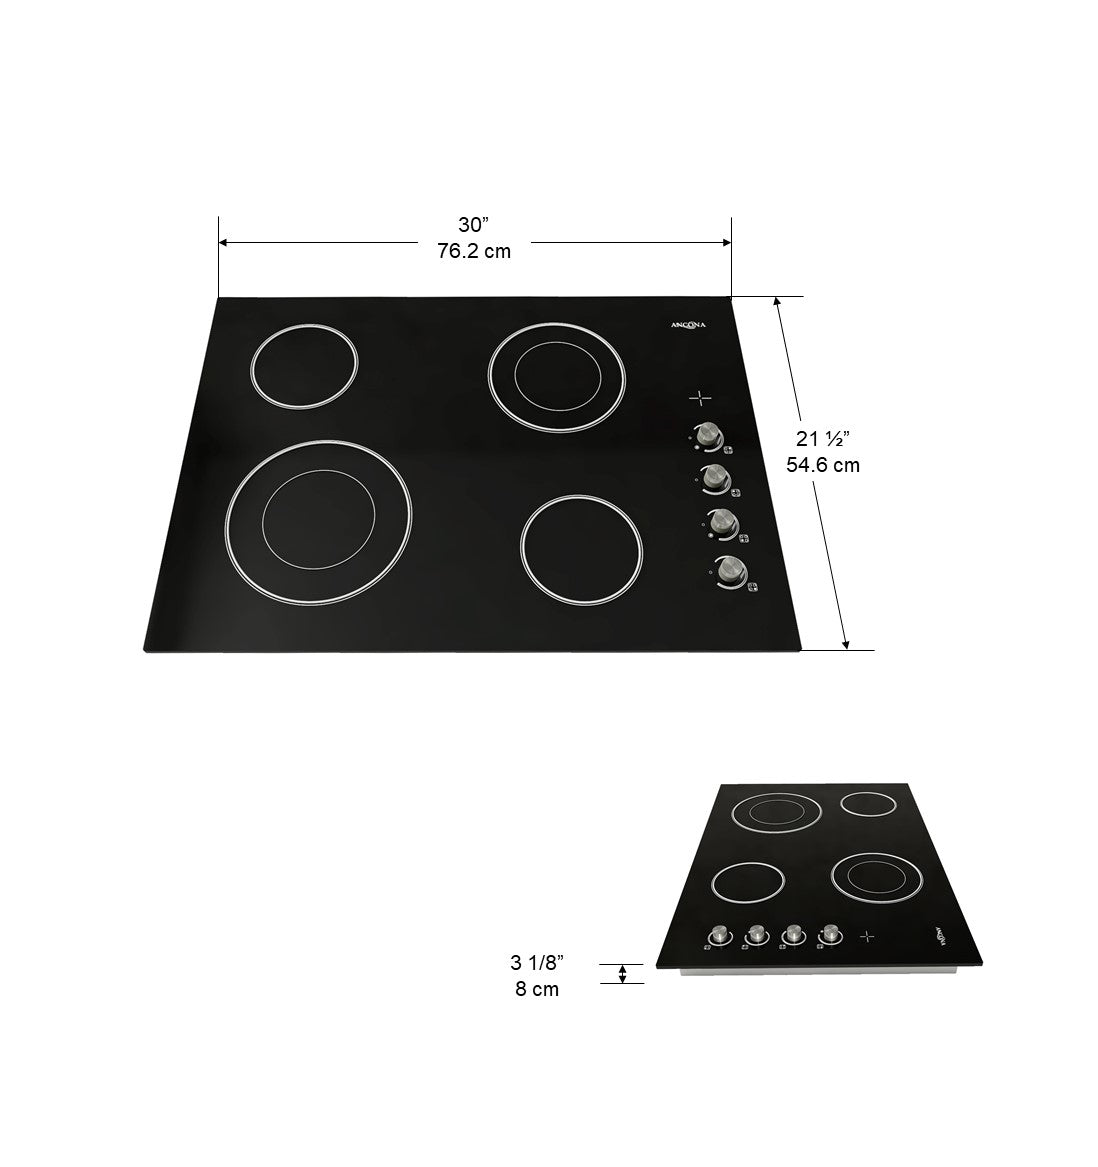 Table de cuisson Select en vitrocéramique et à éléments radiants 30 po